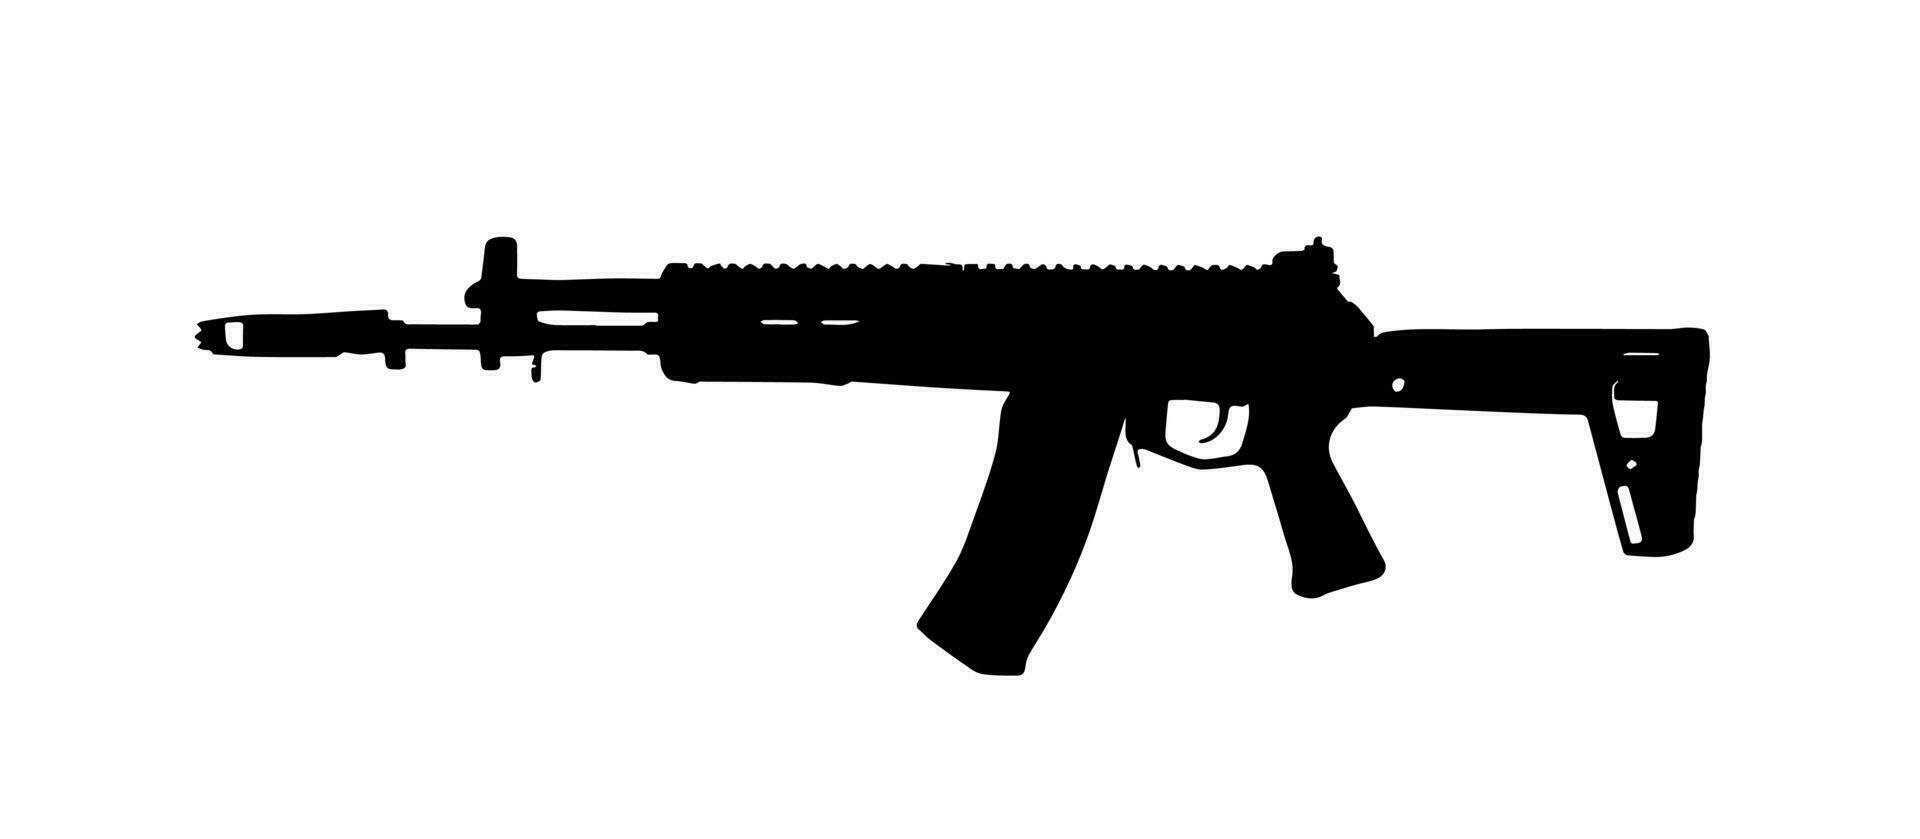 ak-12. arma. vector silueta ilustración